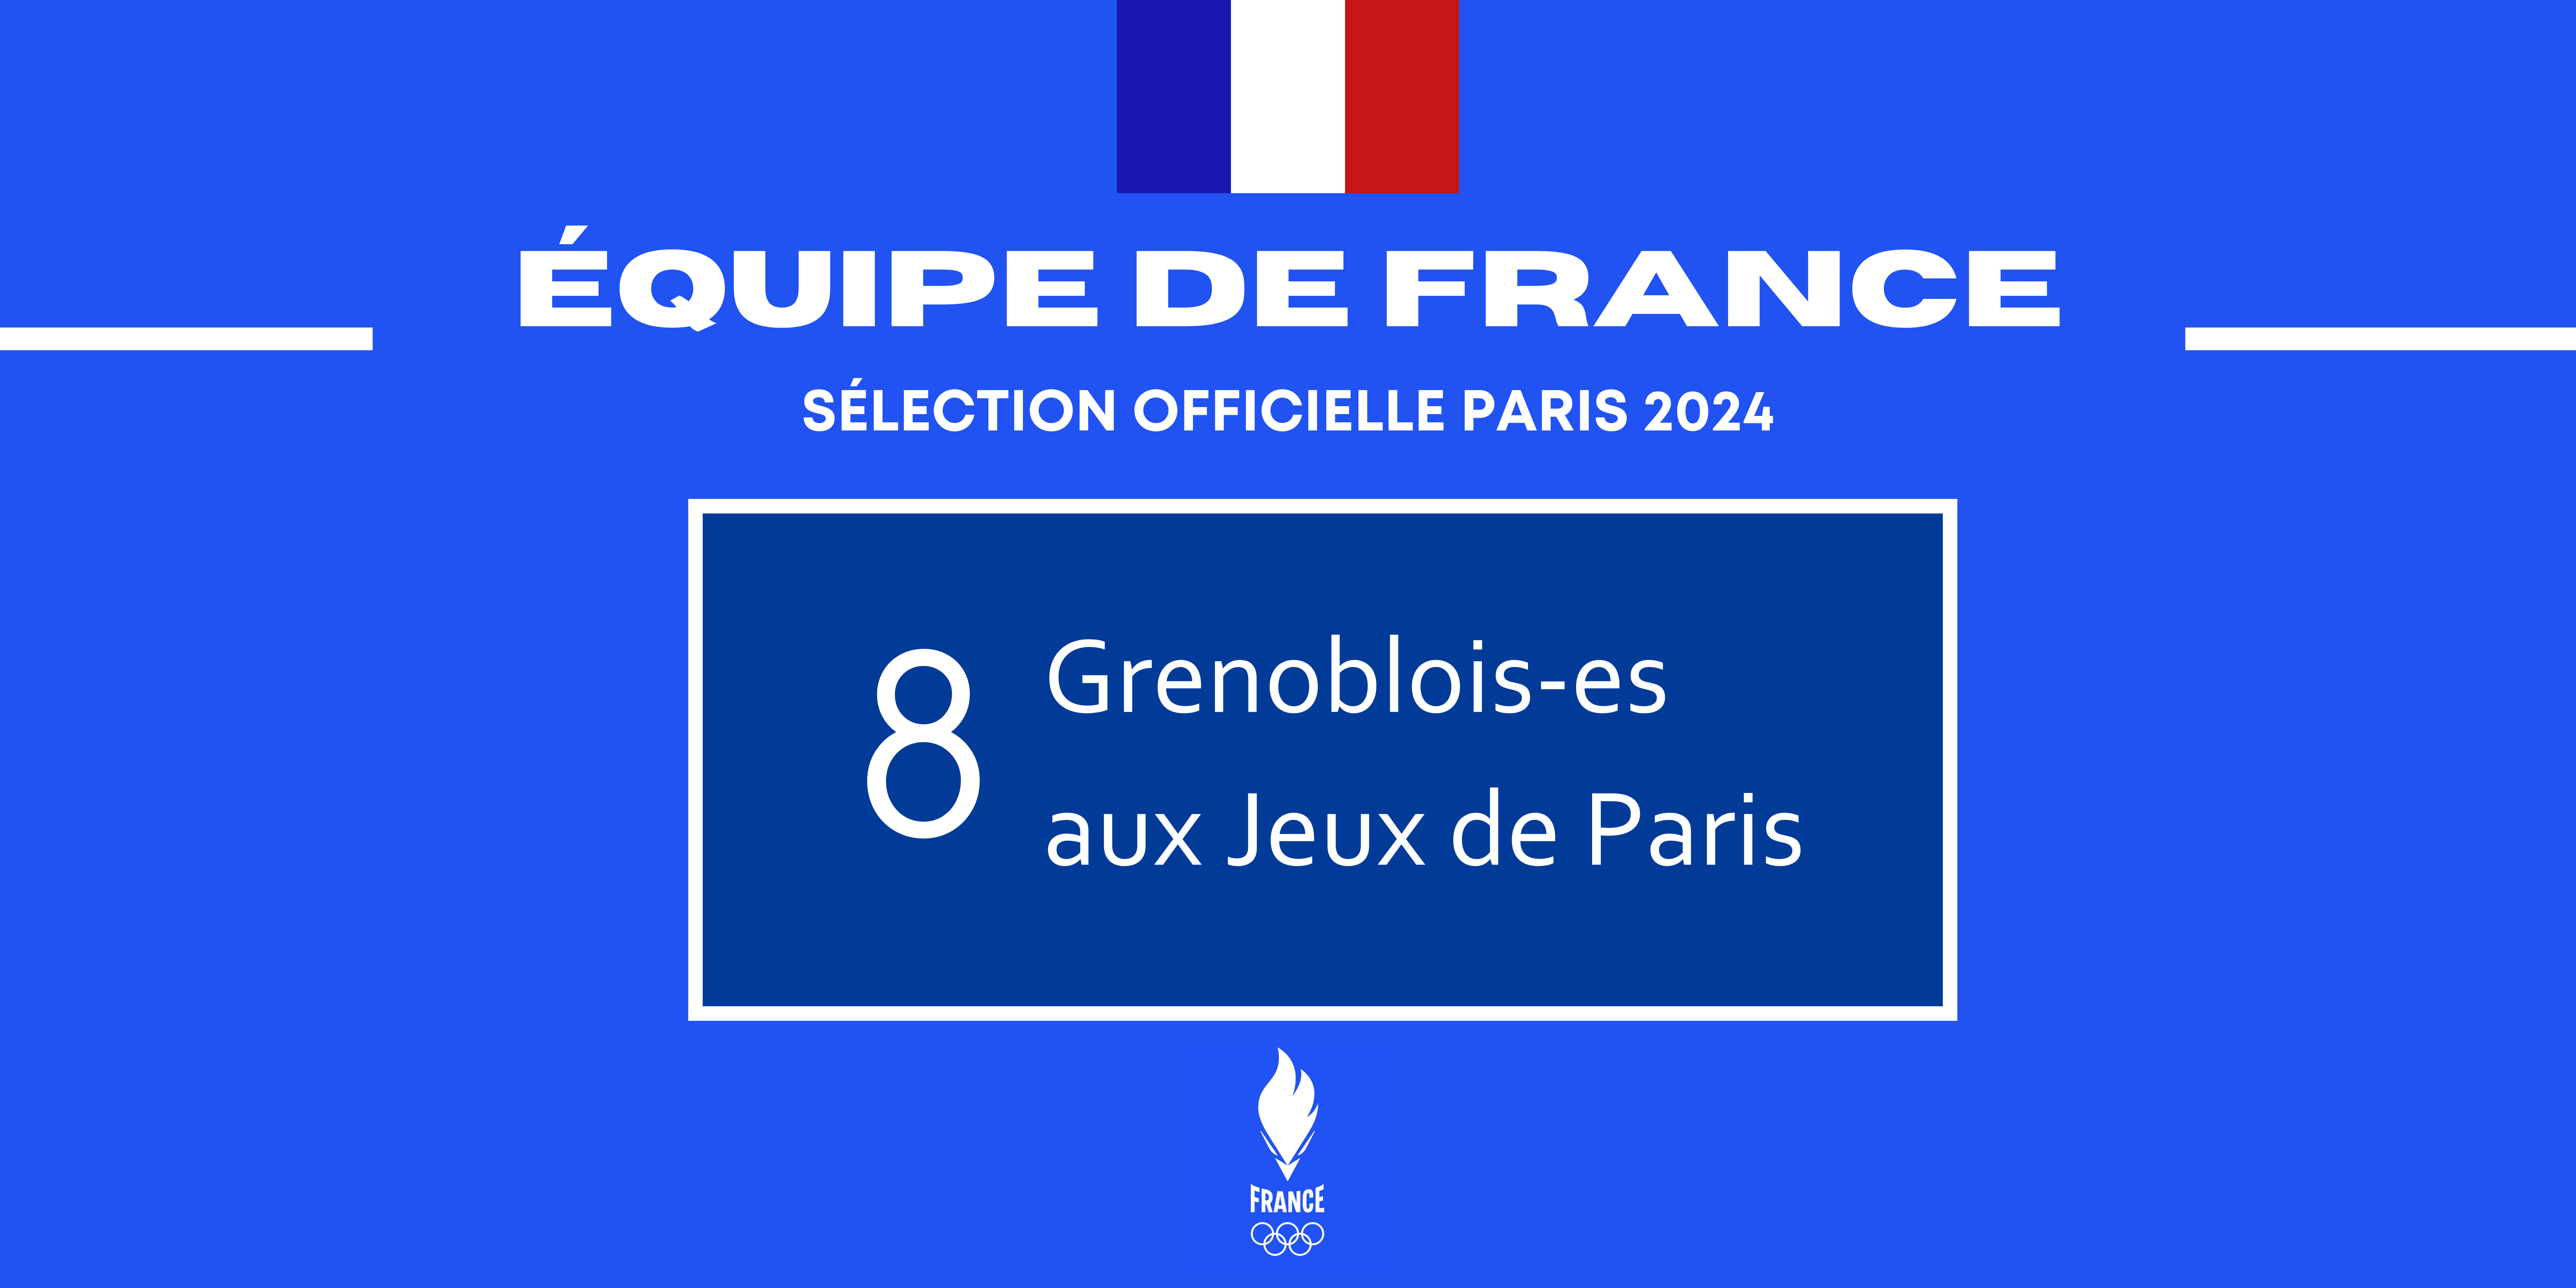 Des Grenoblois-es aux Jeux Olympiques et Paralympiques de Paris 2024